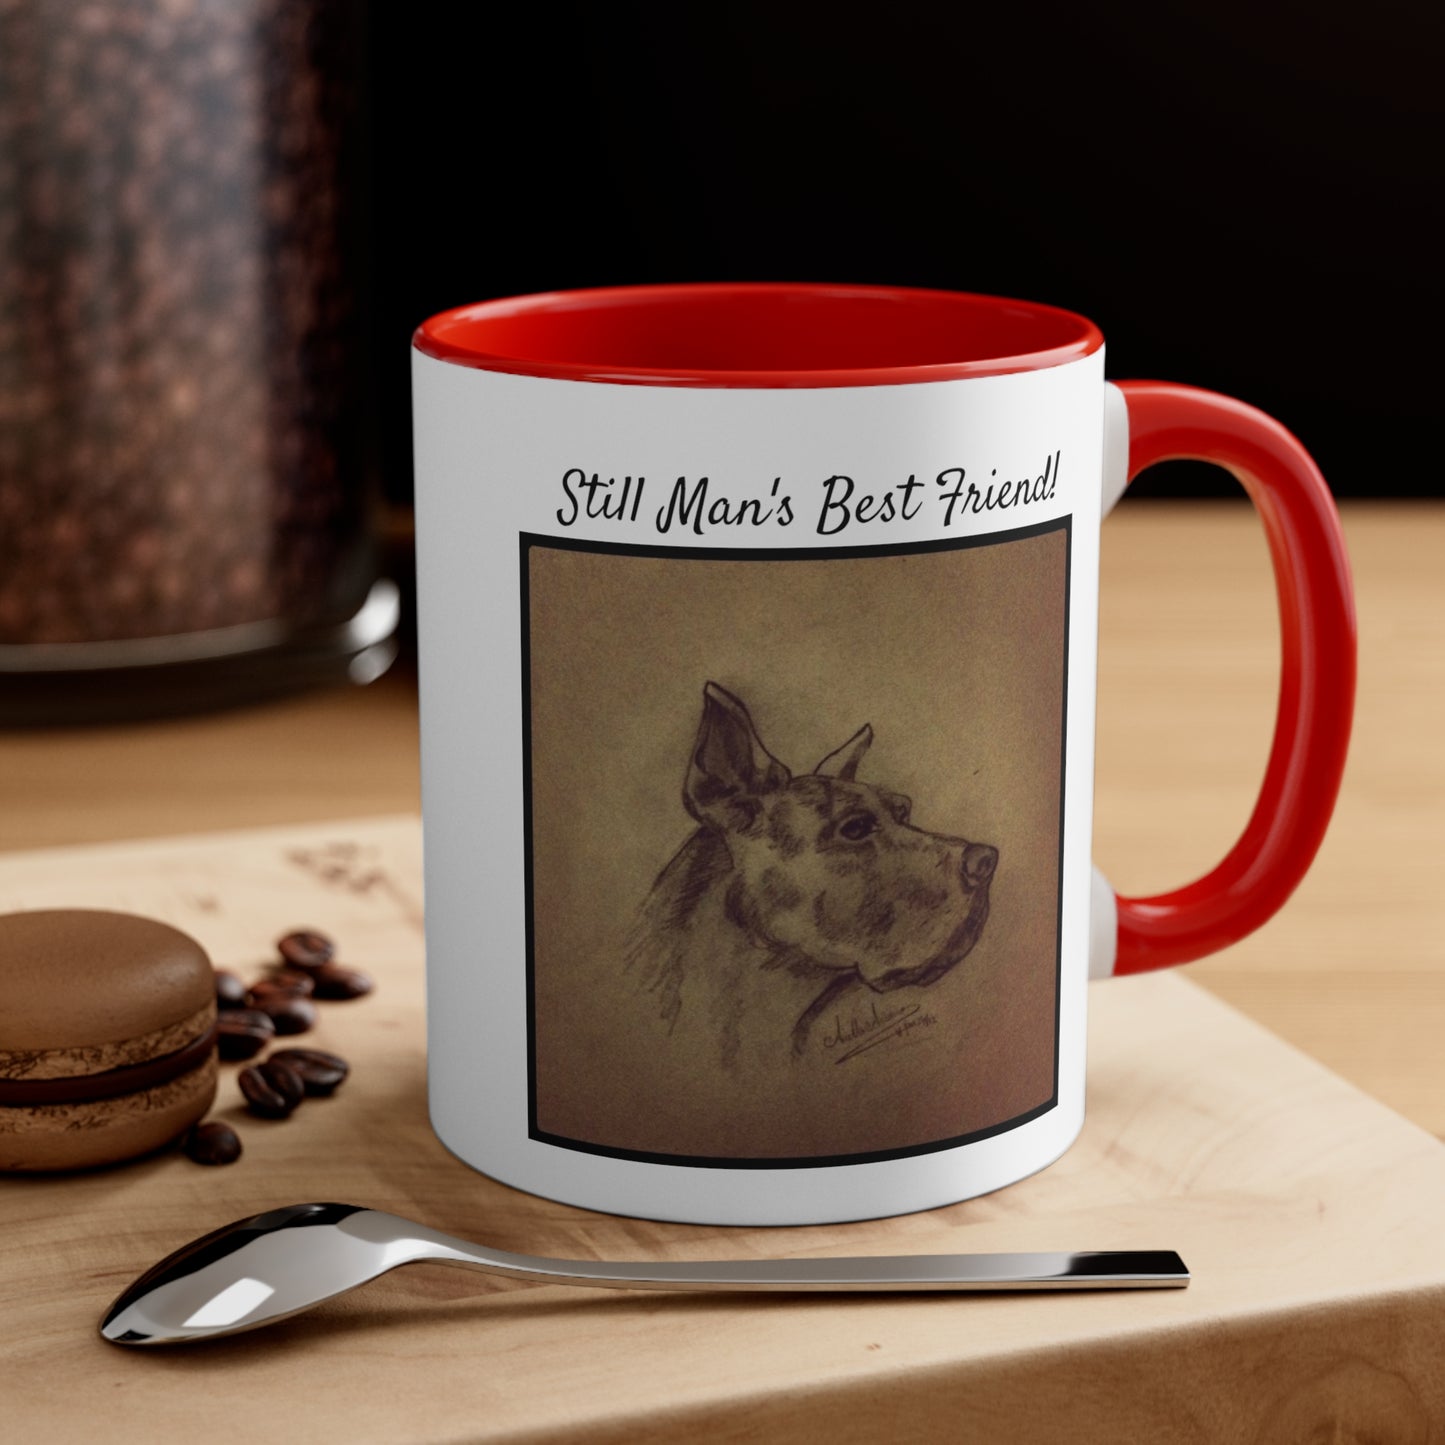 Man's Best Friend Accent Color Coffee Mug, 11oz